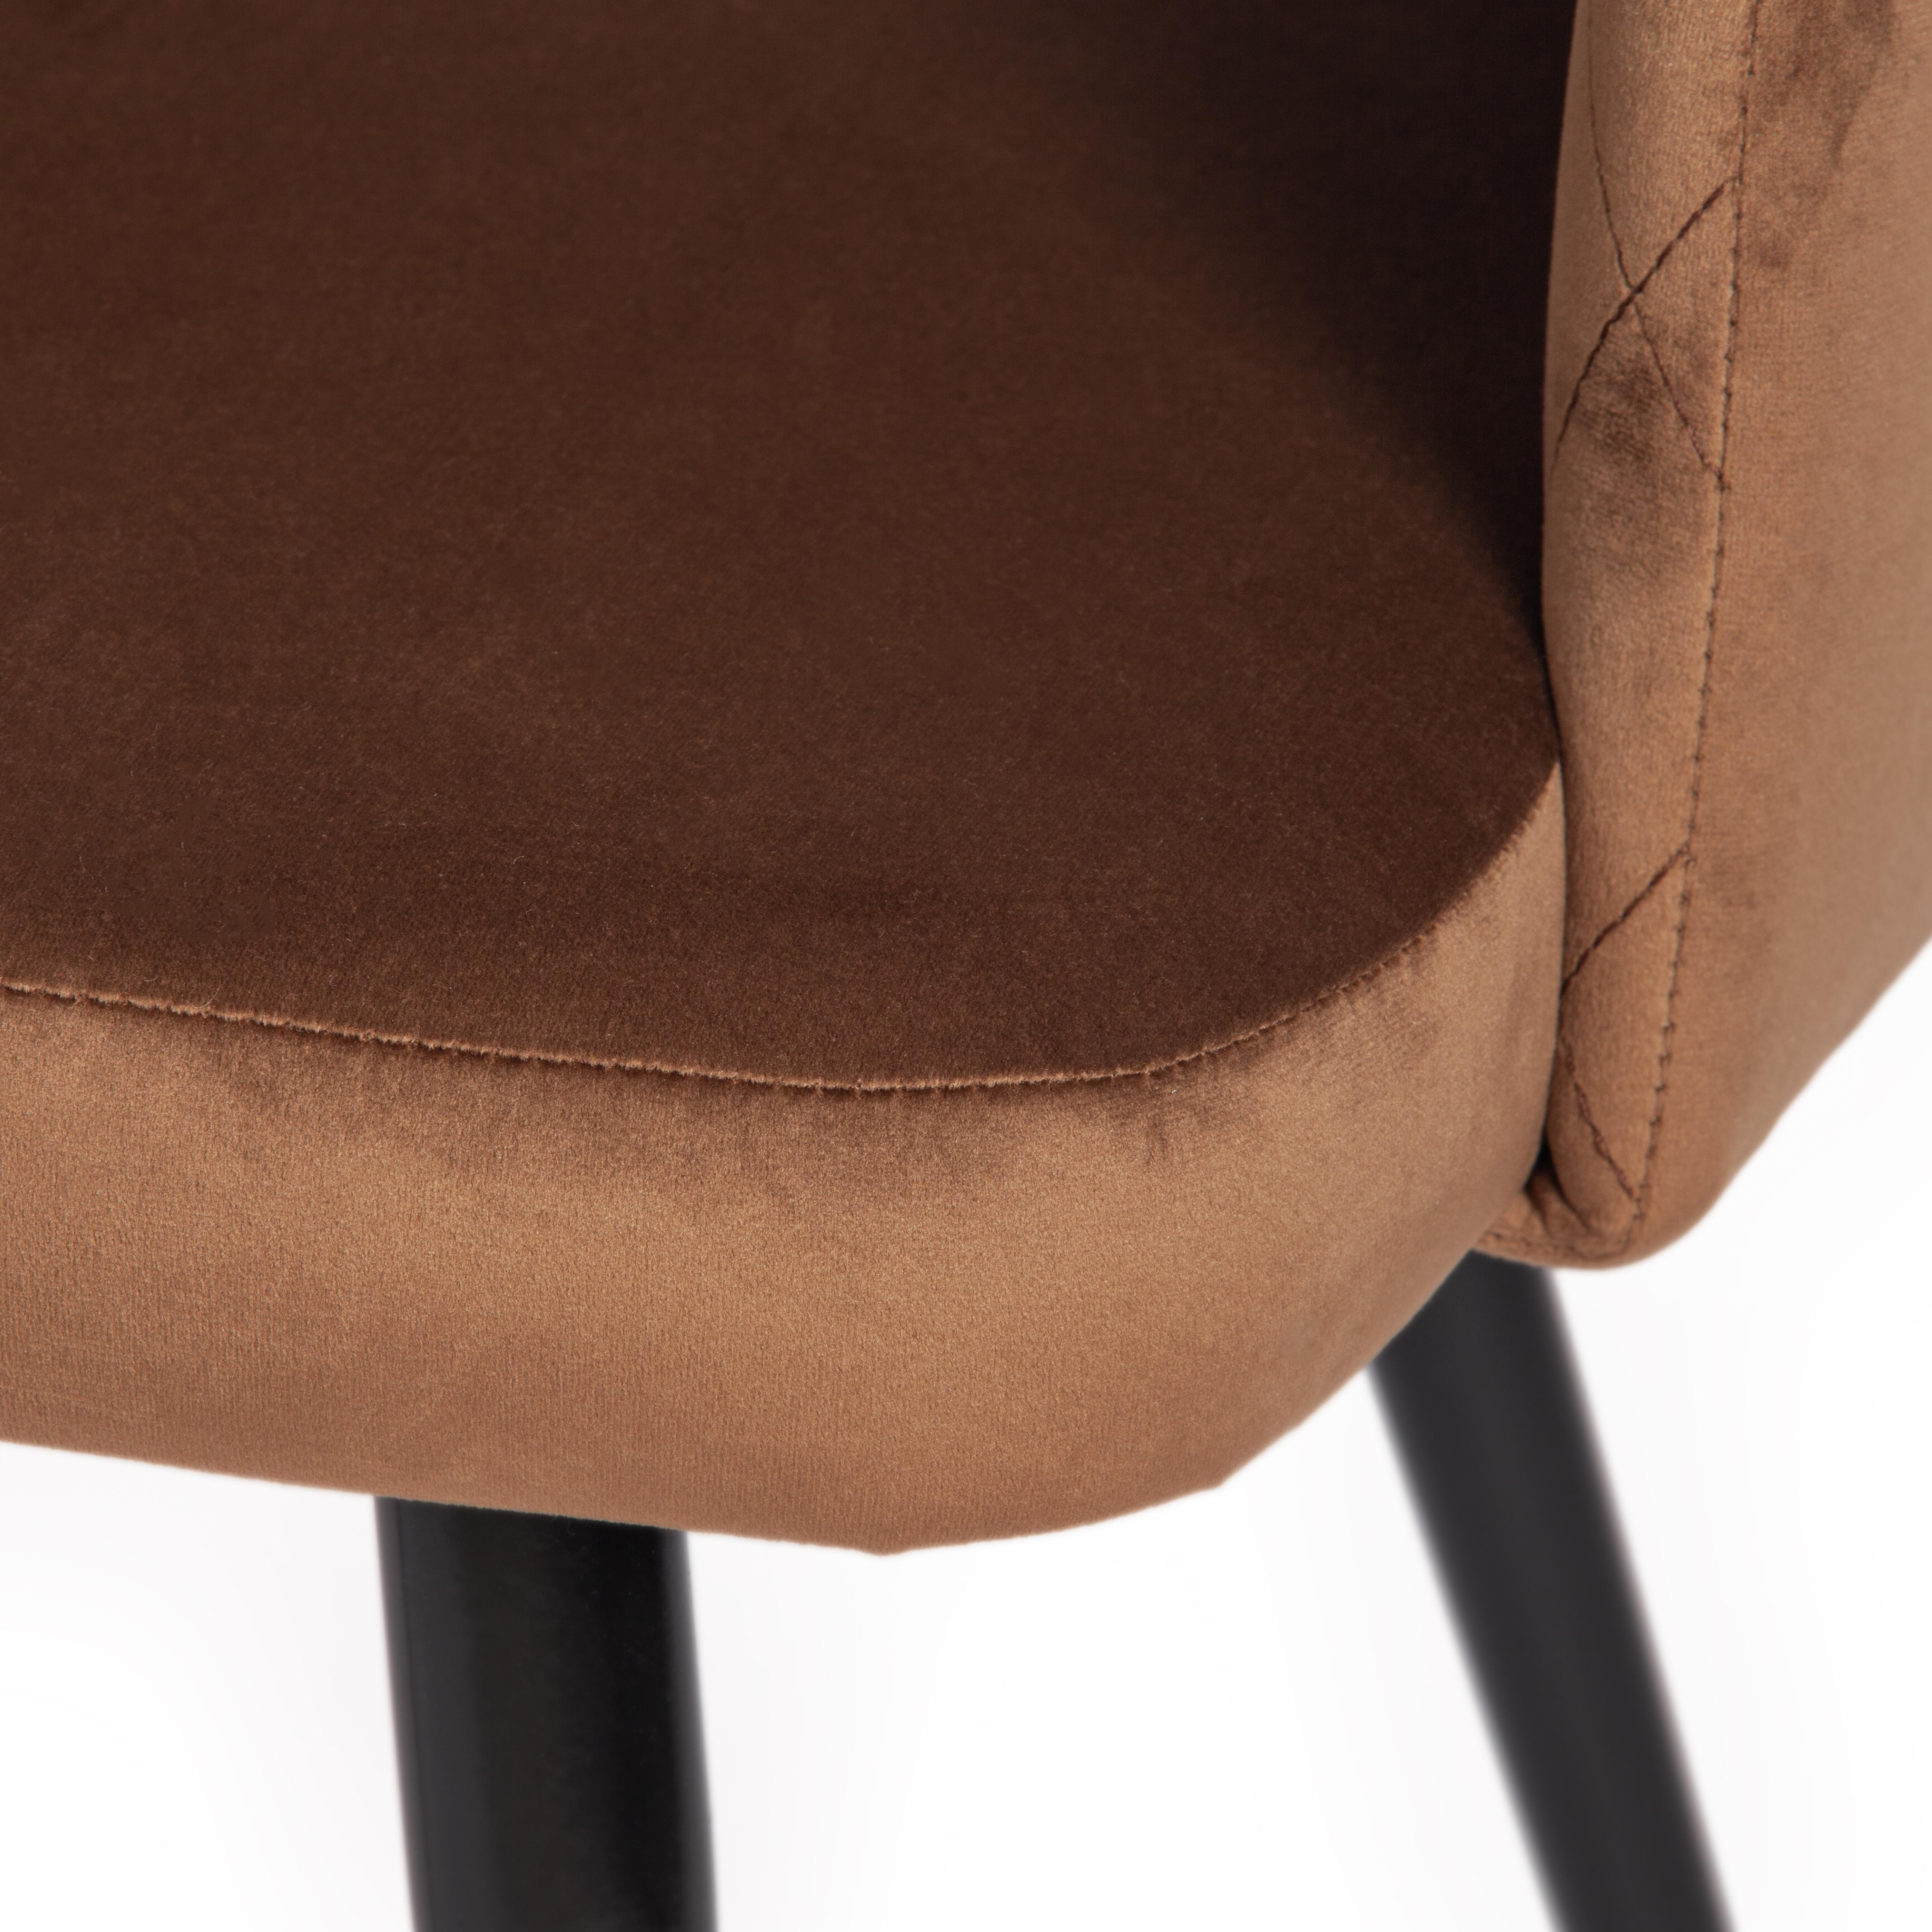 Кресло VALKYRIA (mod. 711) / 1 шт. в упаковке ткань/металл, 55х55х80 см, высота до сиденья 48 см, коричневый barkhat 11/черный